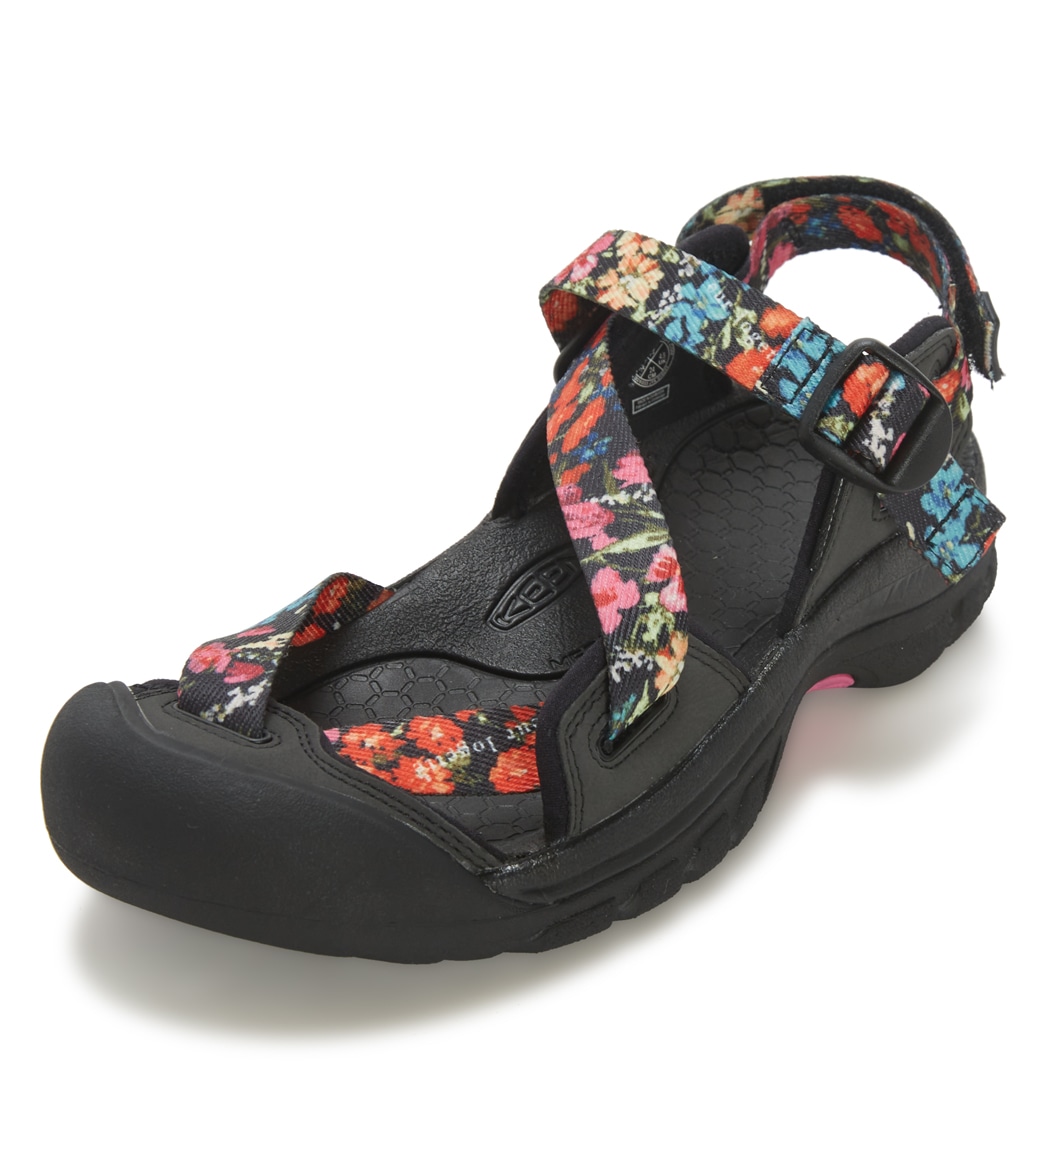 Keen Women's Zerraport Ii Water Shoes - Ibis Rose/Black 10 - Swimoutlet.com